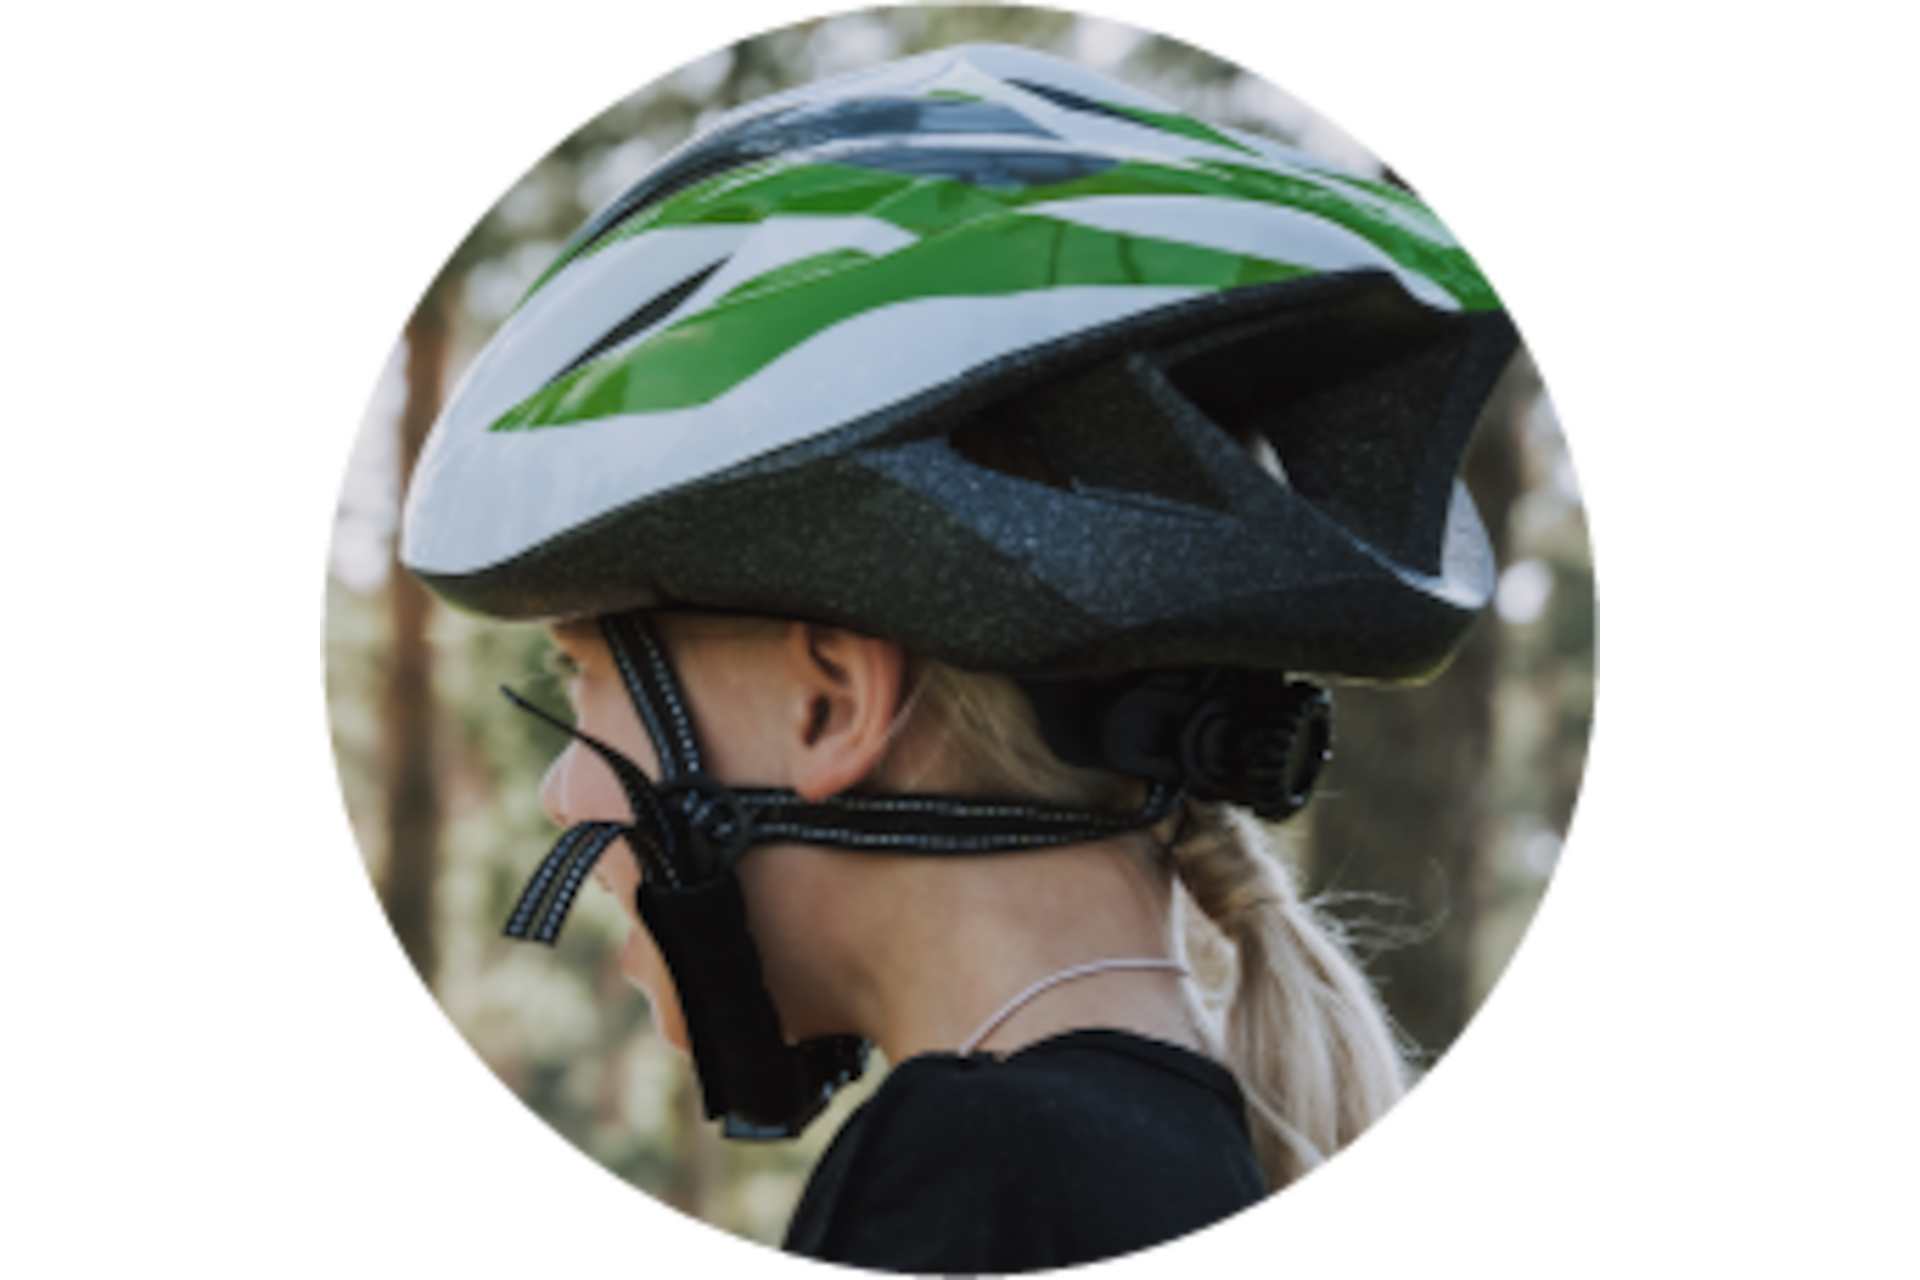 NATRUDES 3in1 Desinfektion - Helm Motorrad Fahrrad Ski innen & außen Reiniger Sprühflasche mit speziellem Sprühkopf